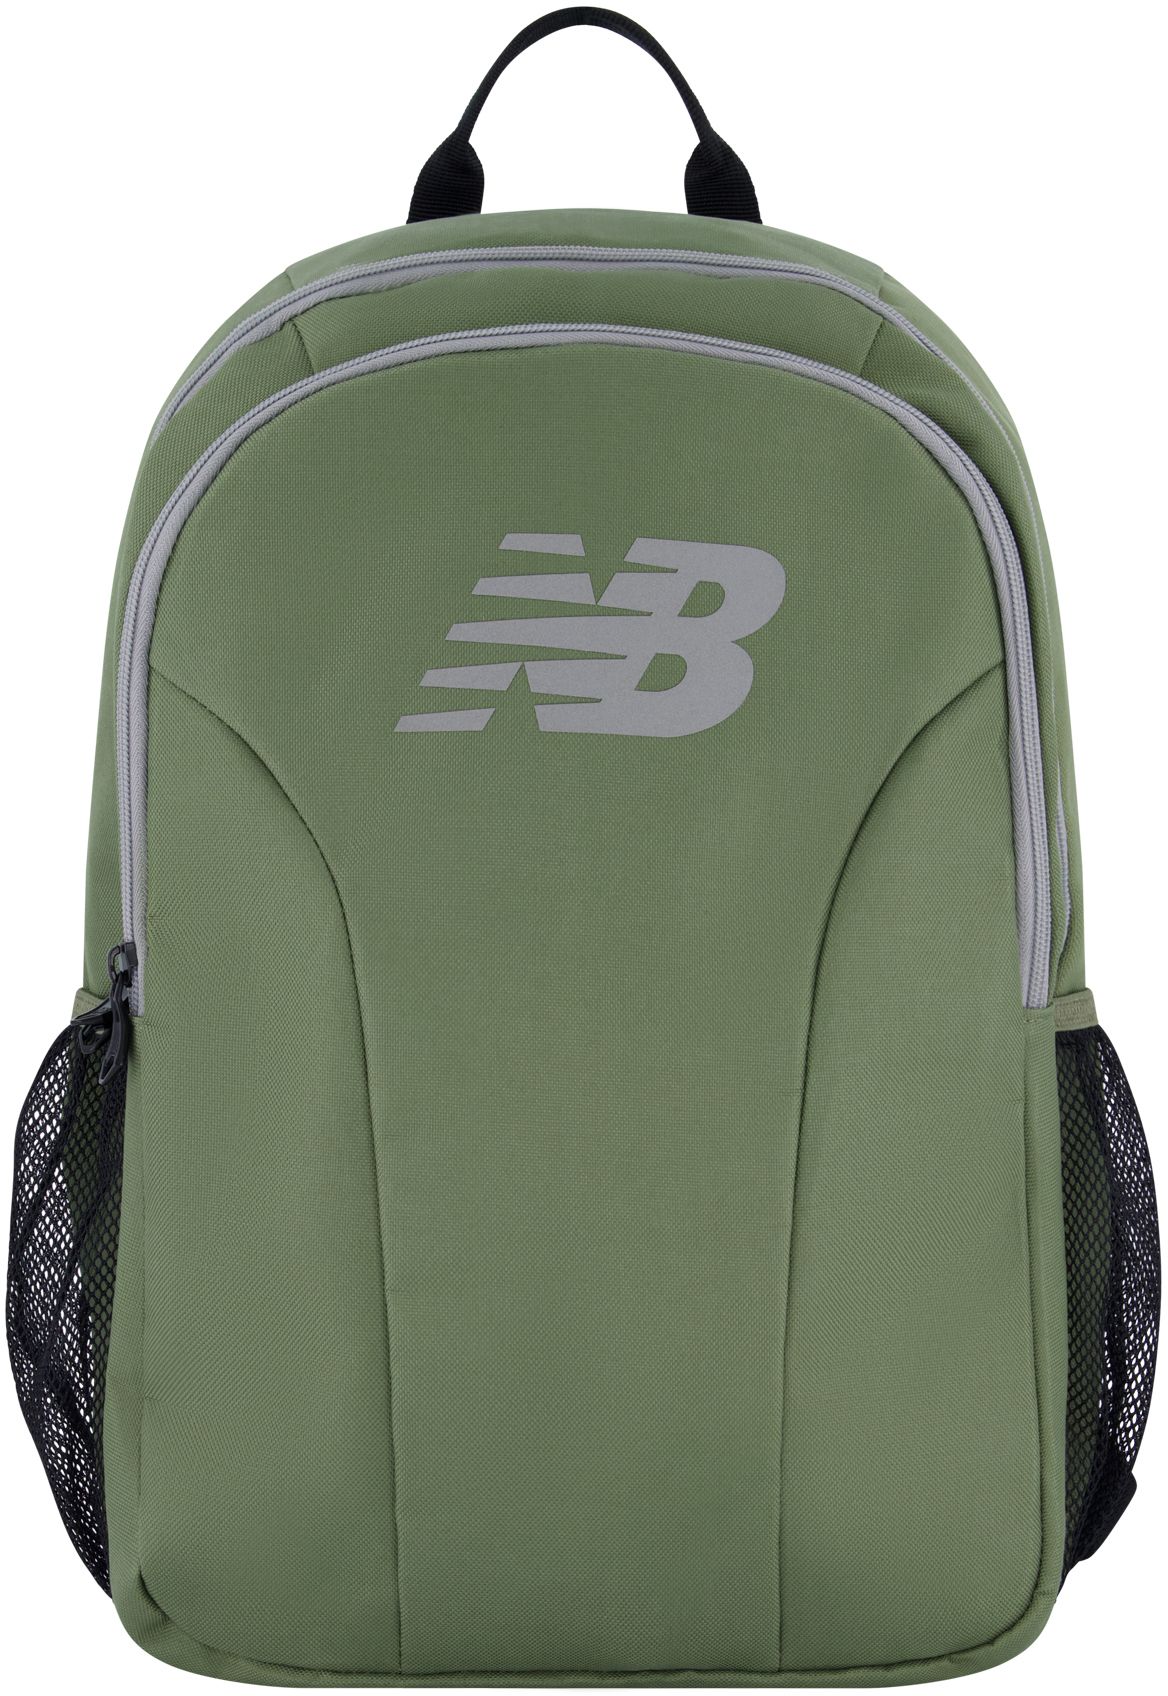 New Balance Logo 19 Laptop Backpack